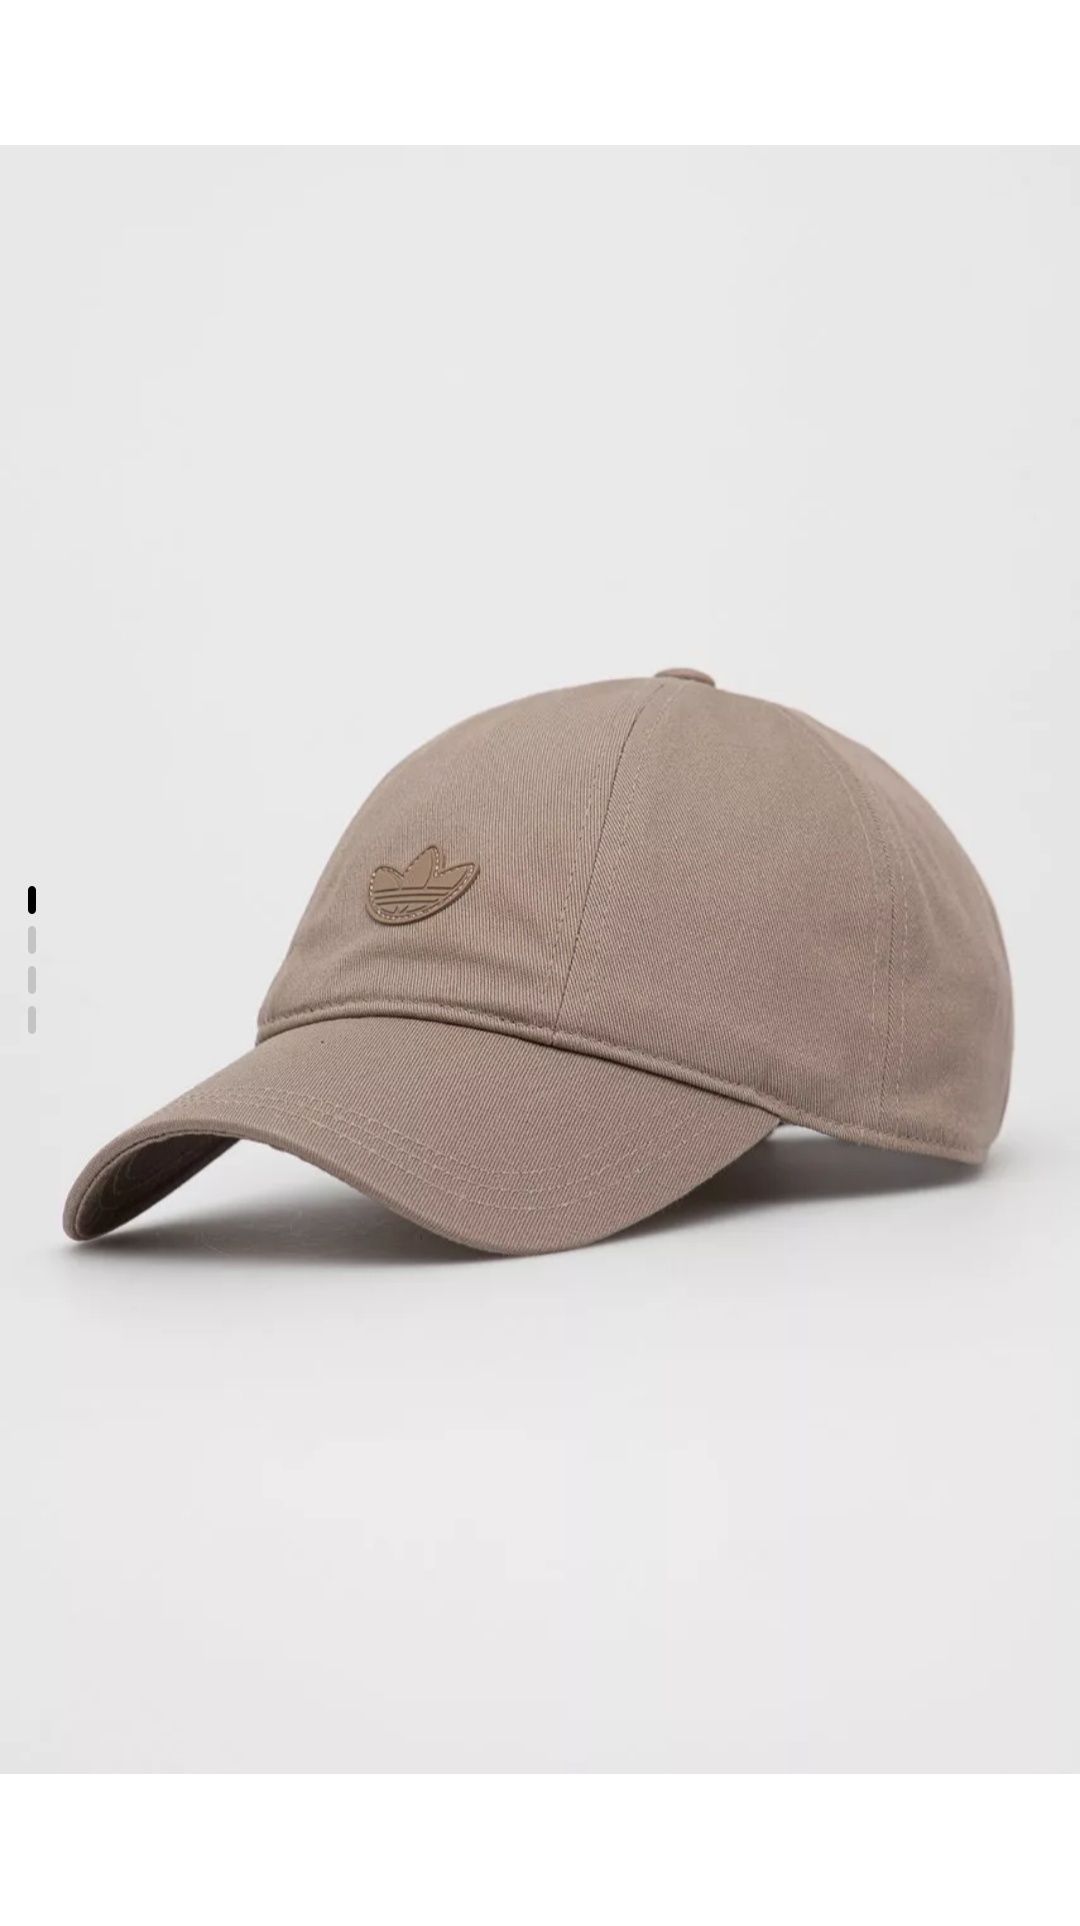 Нова кепка Adidas Originals пшеничного кольору